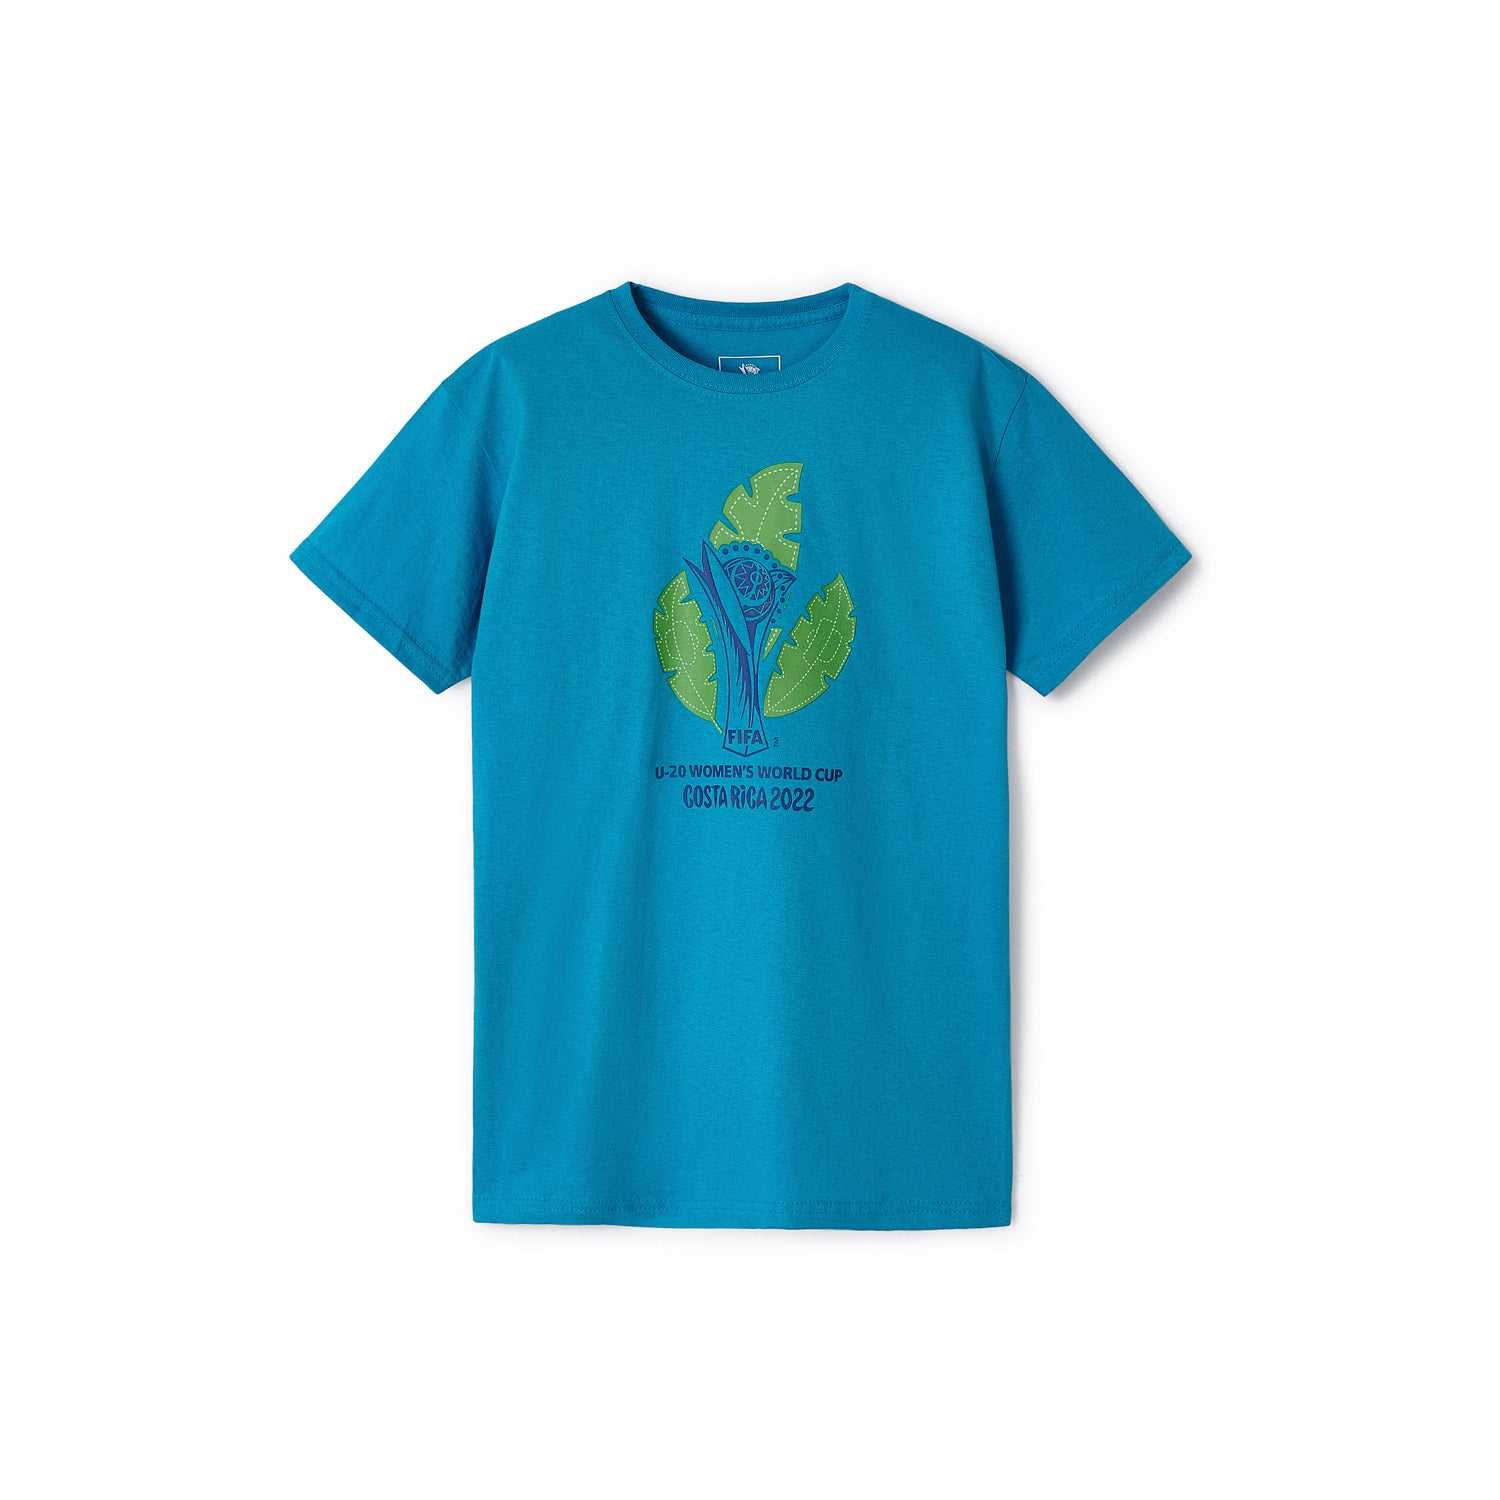 2022 U20 Women's World Cup Costa Rica Logo Blue T-Shirt - Youth